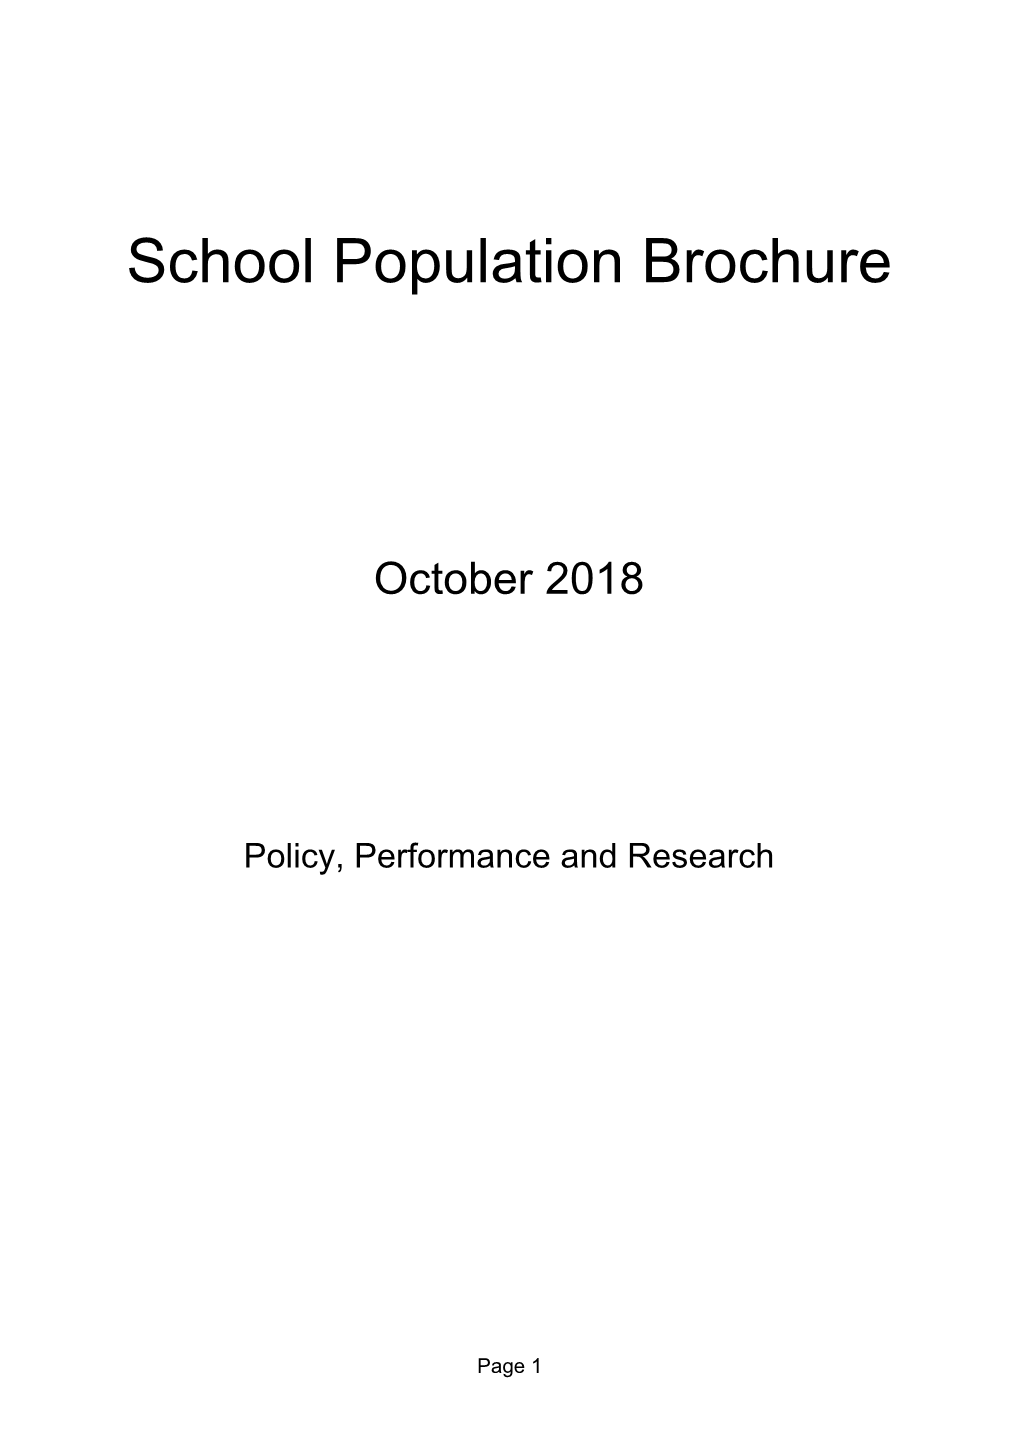 School Population Brochure October 2018